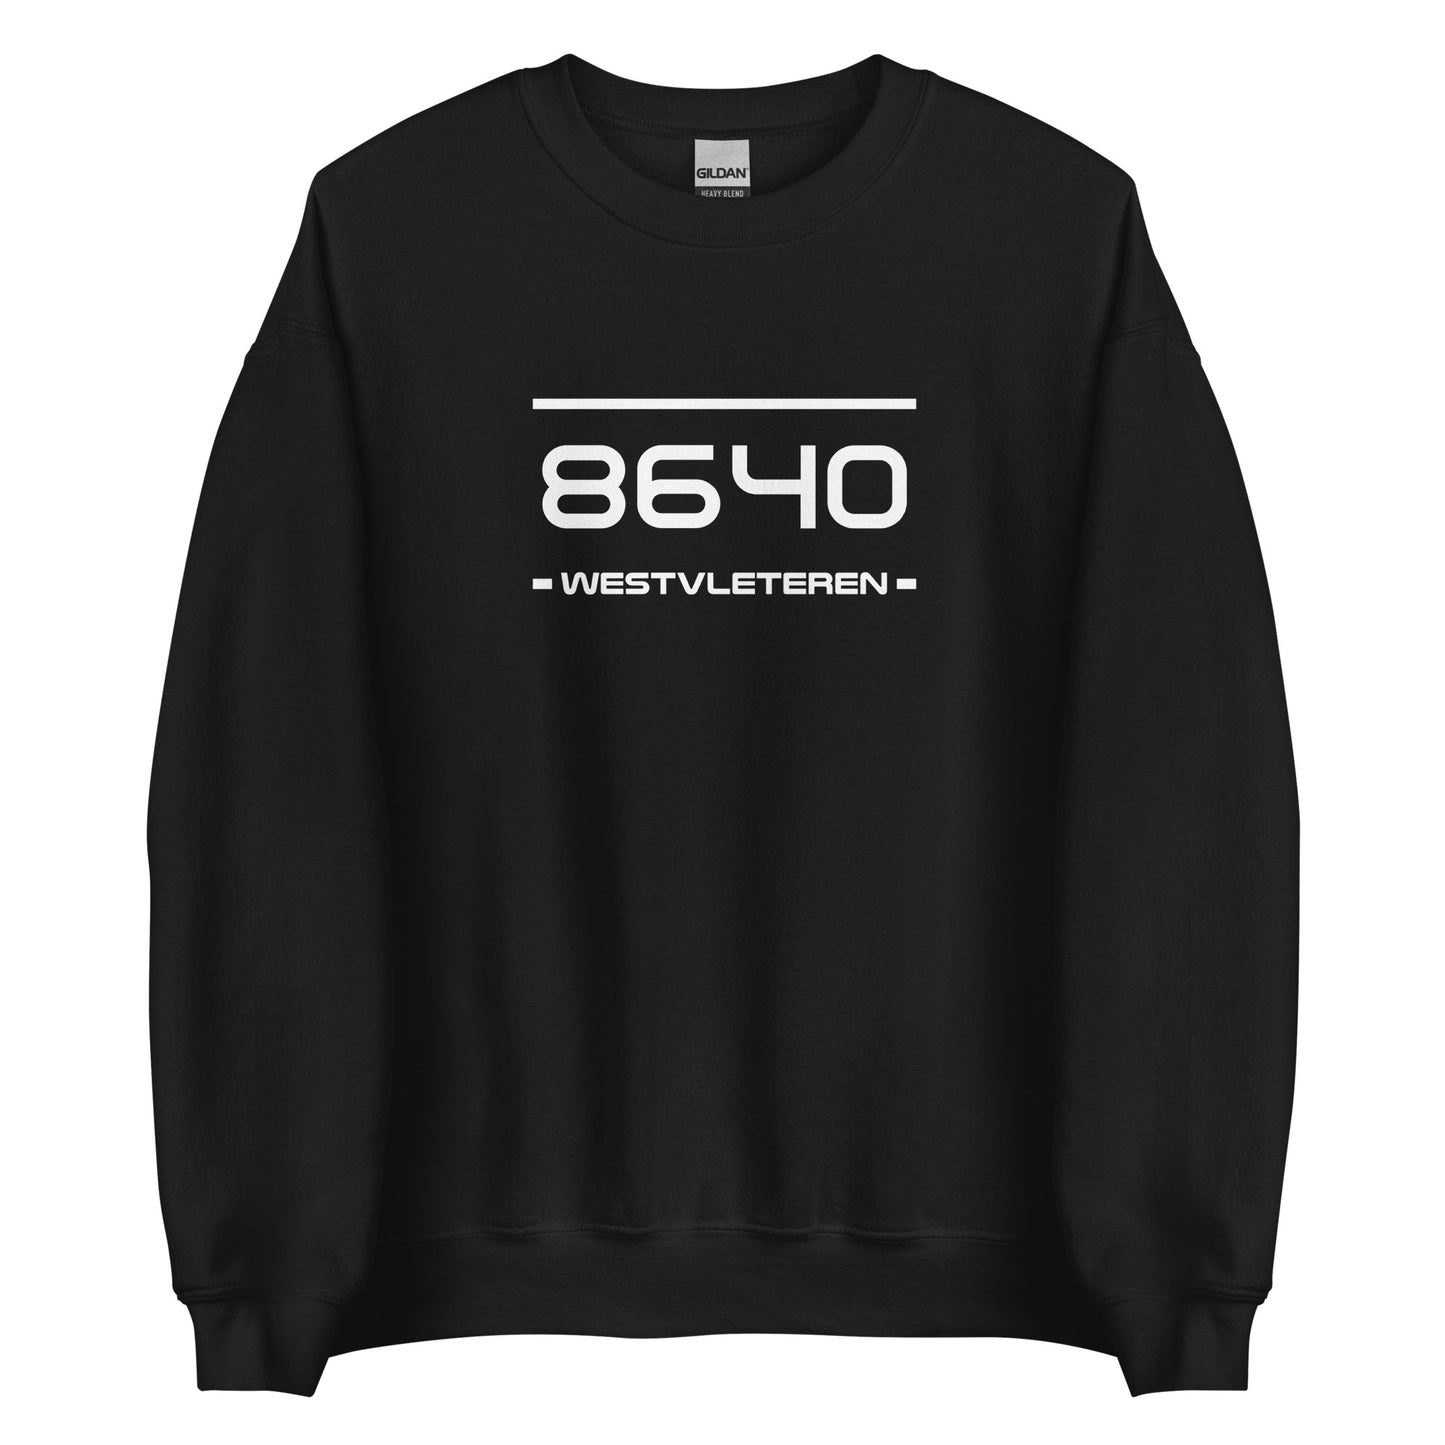 Sweater - 8640 - Westvleteren (M/V)